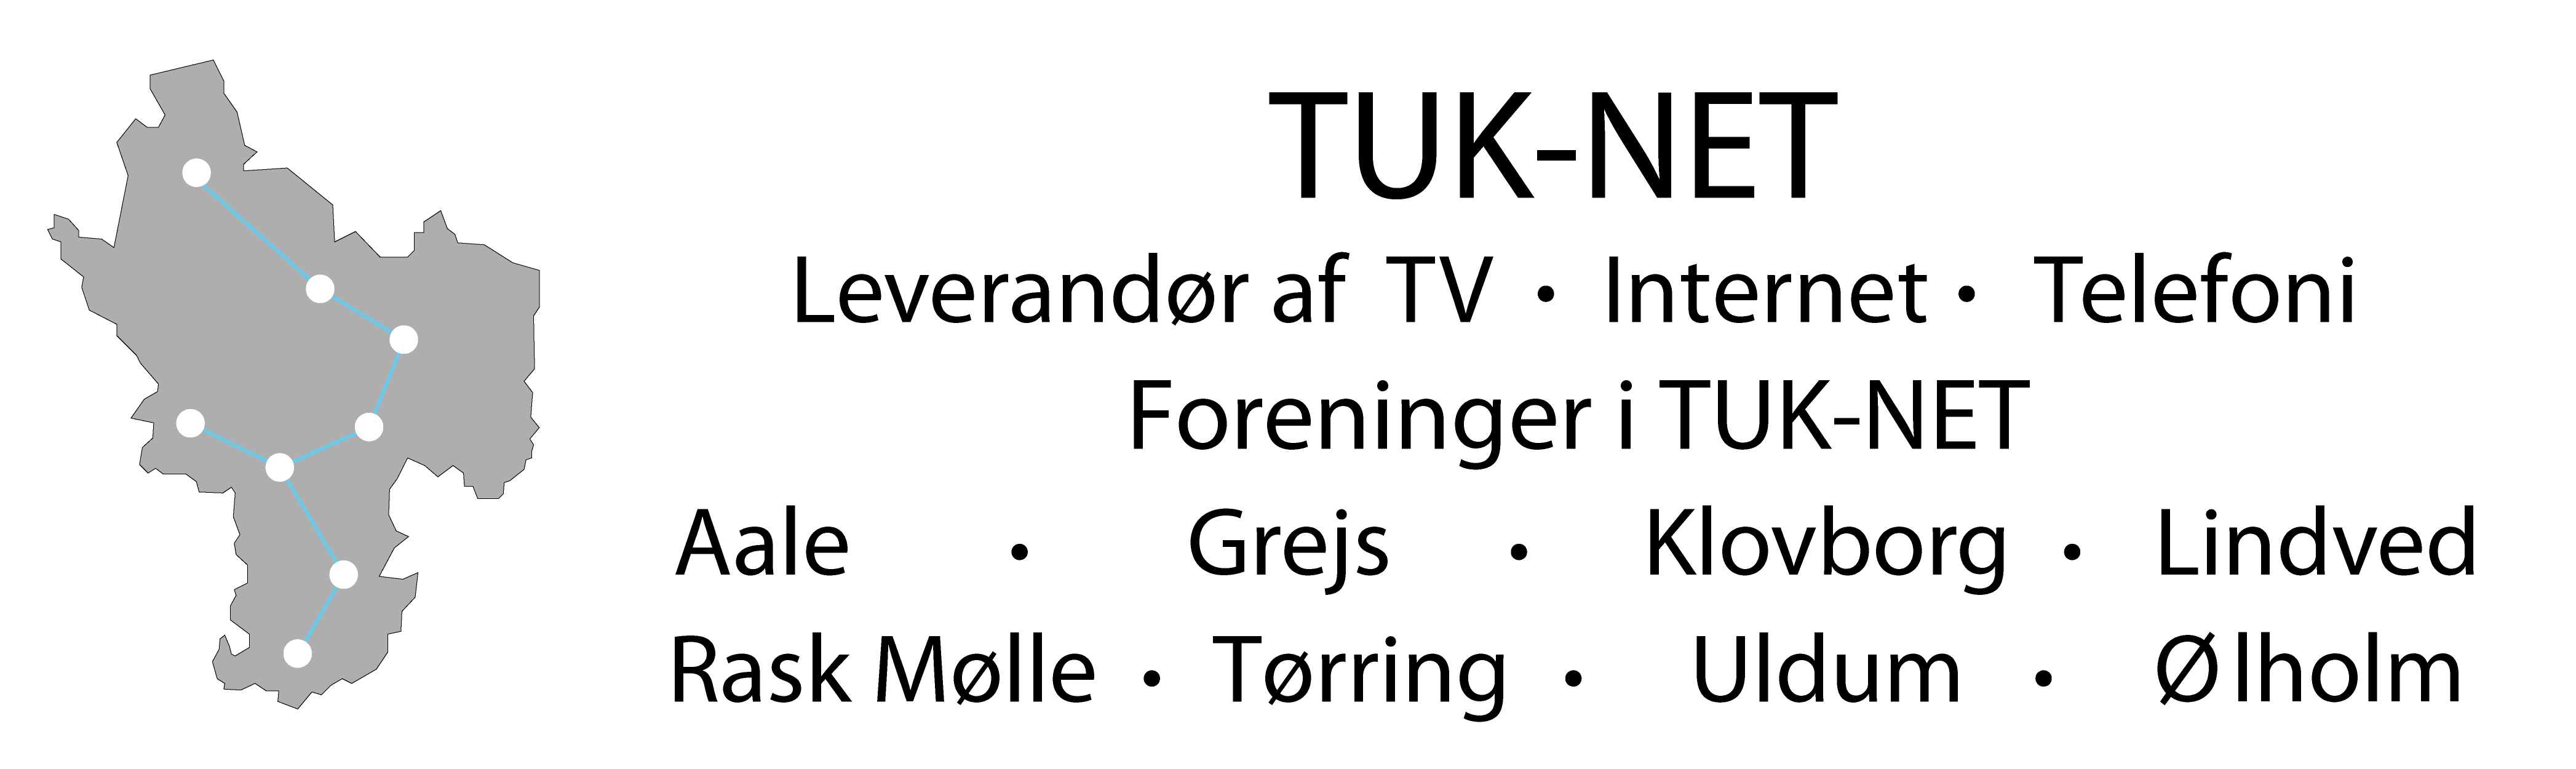 TUK NET logo trans